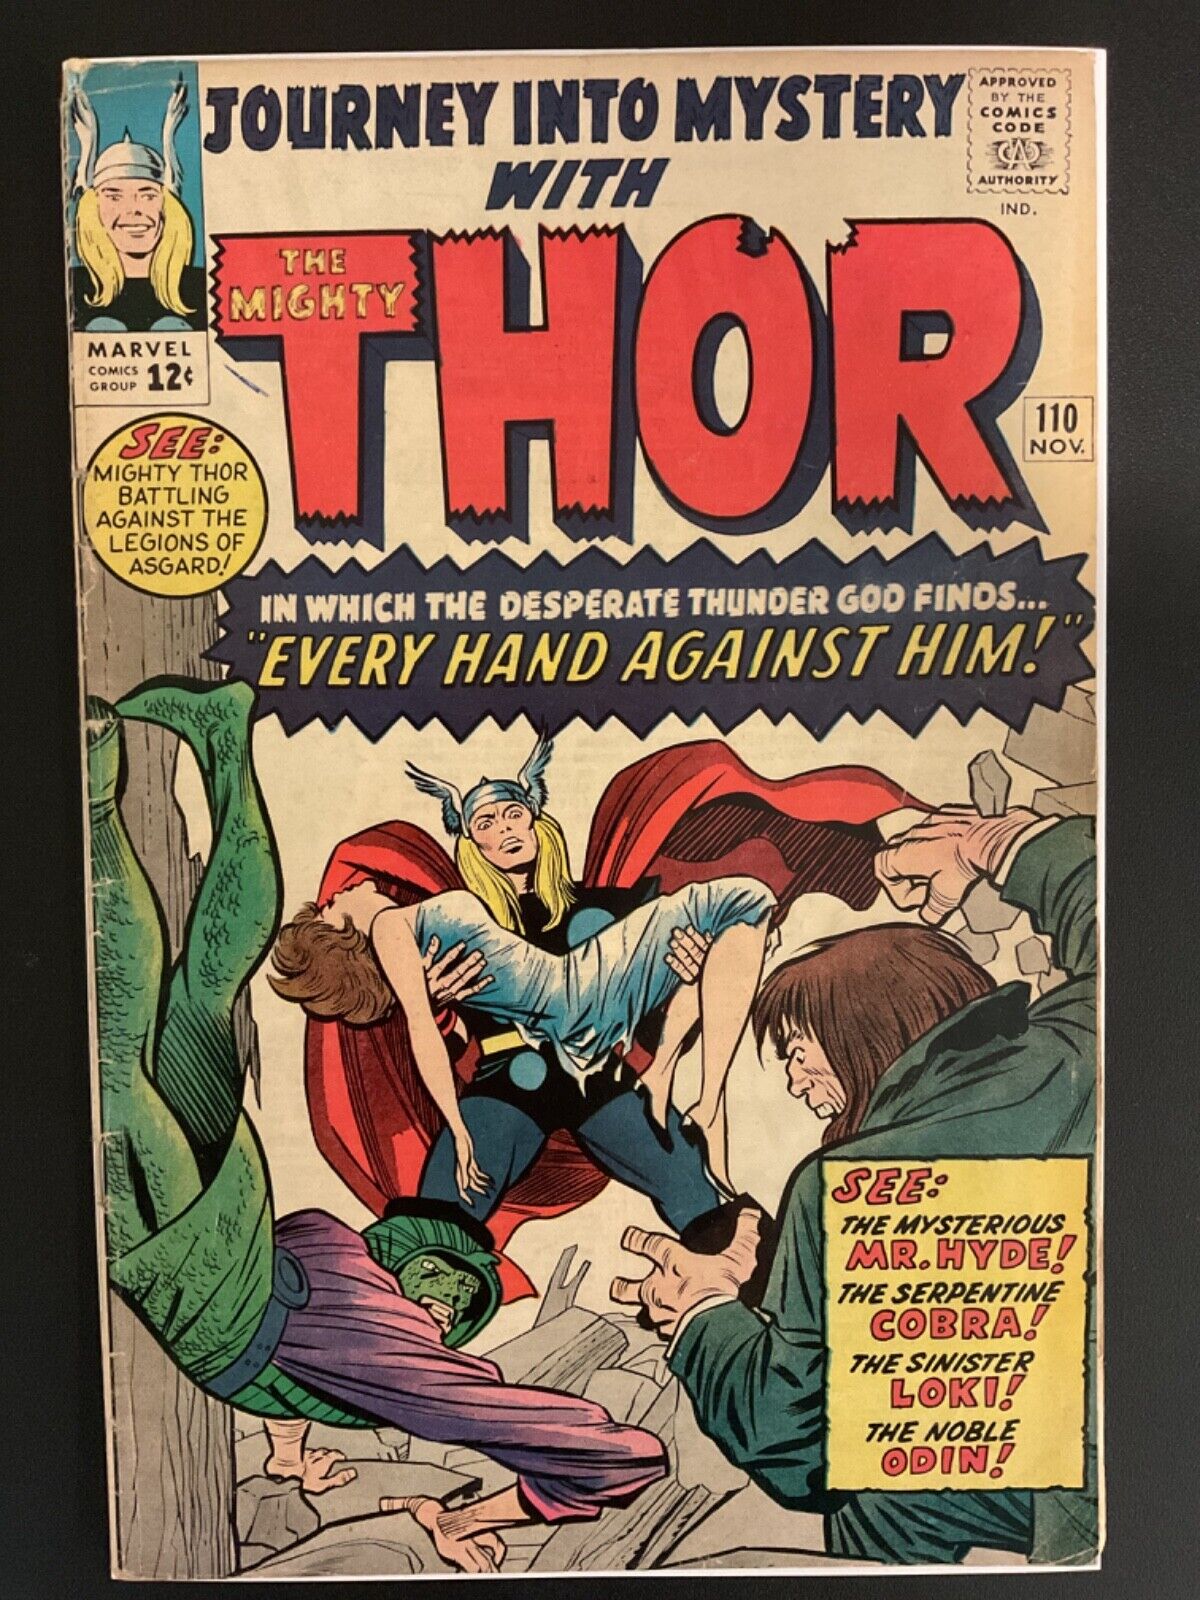 Journey Into Mystery #110 VG+ Thor Loki Odin Kirby Art 1964 Marvel Comics